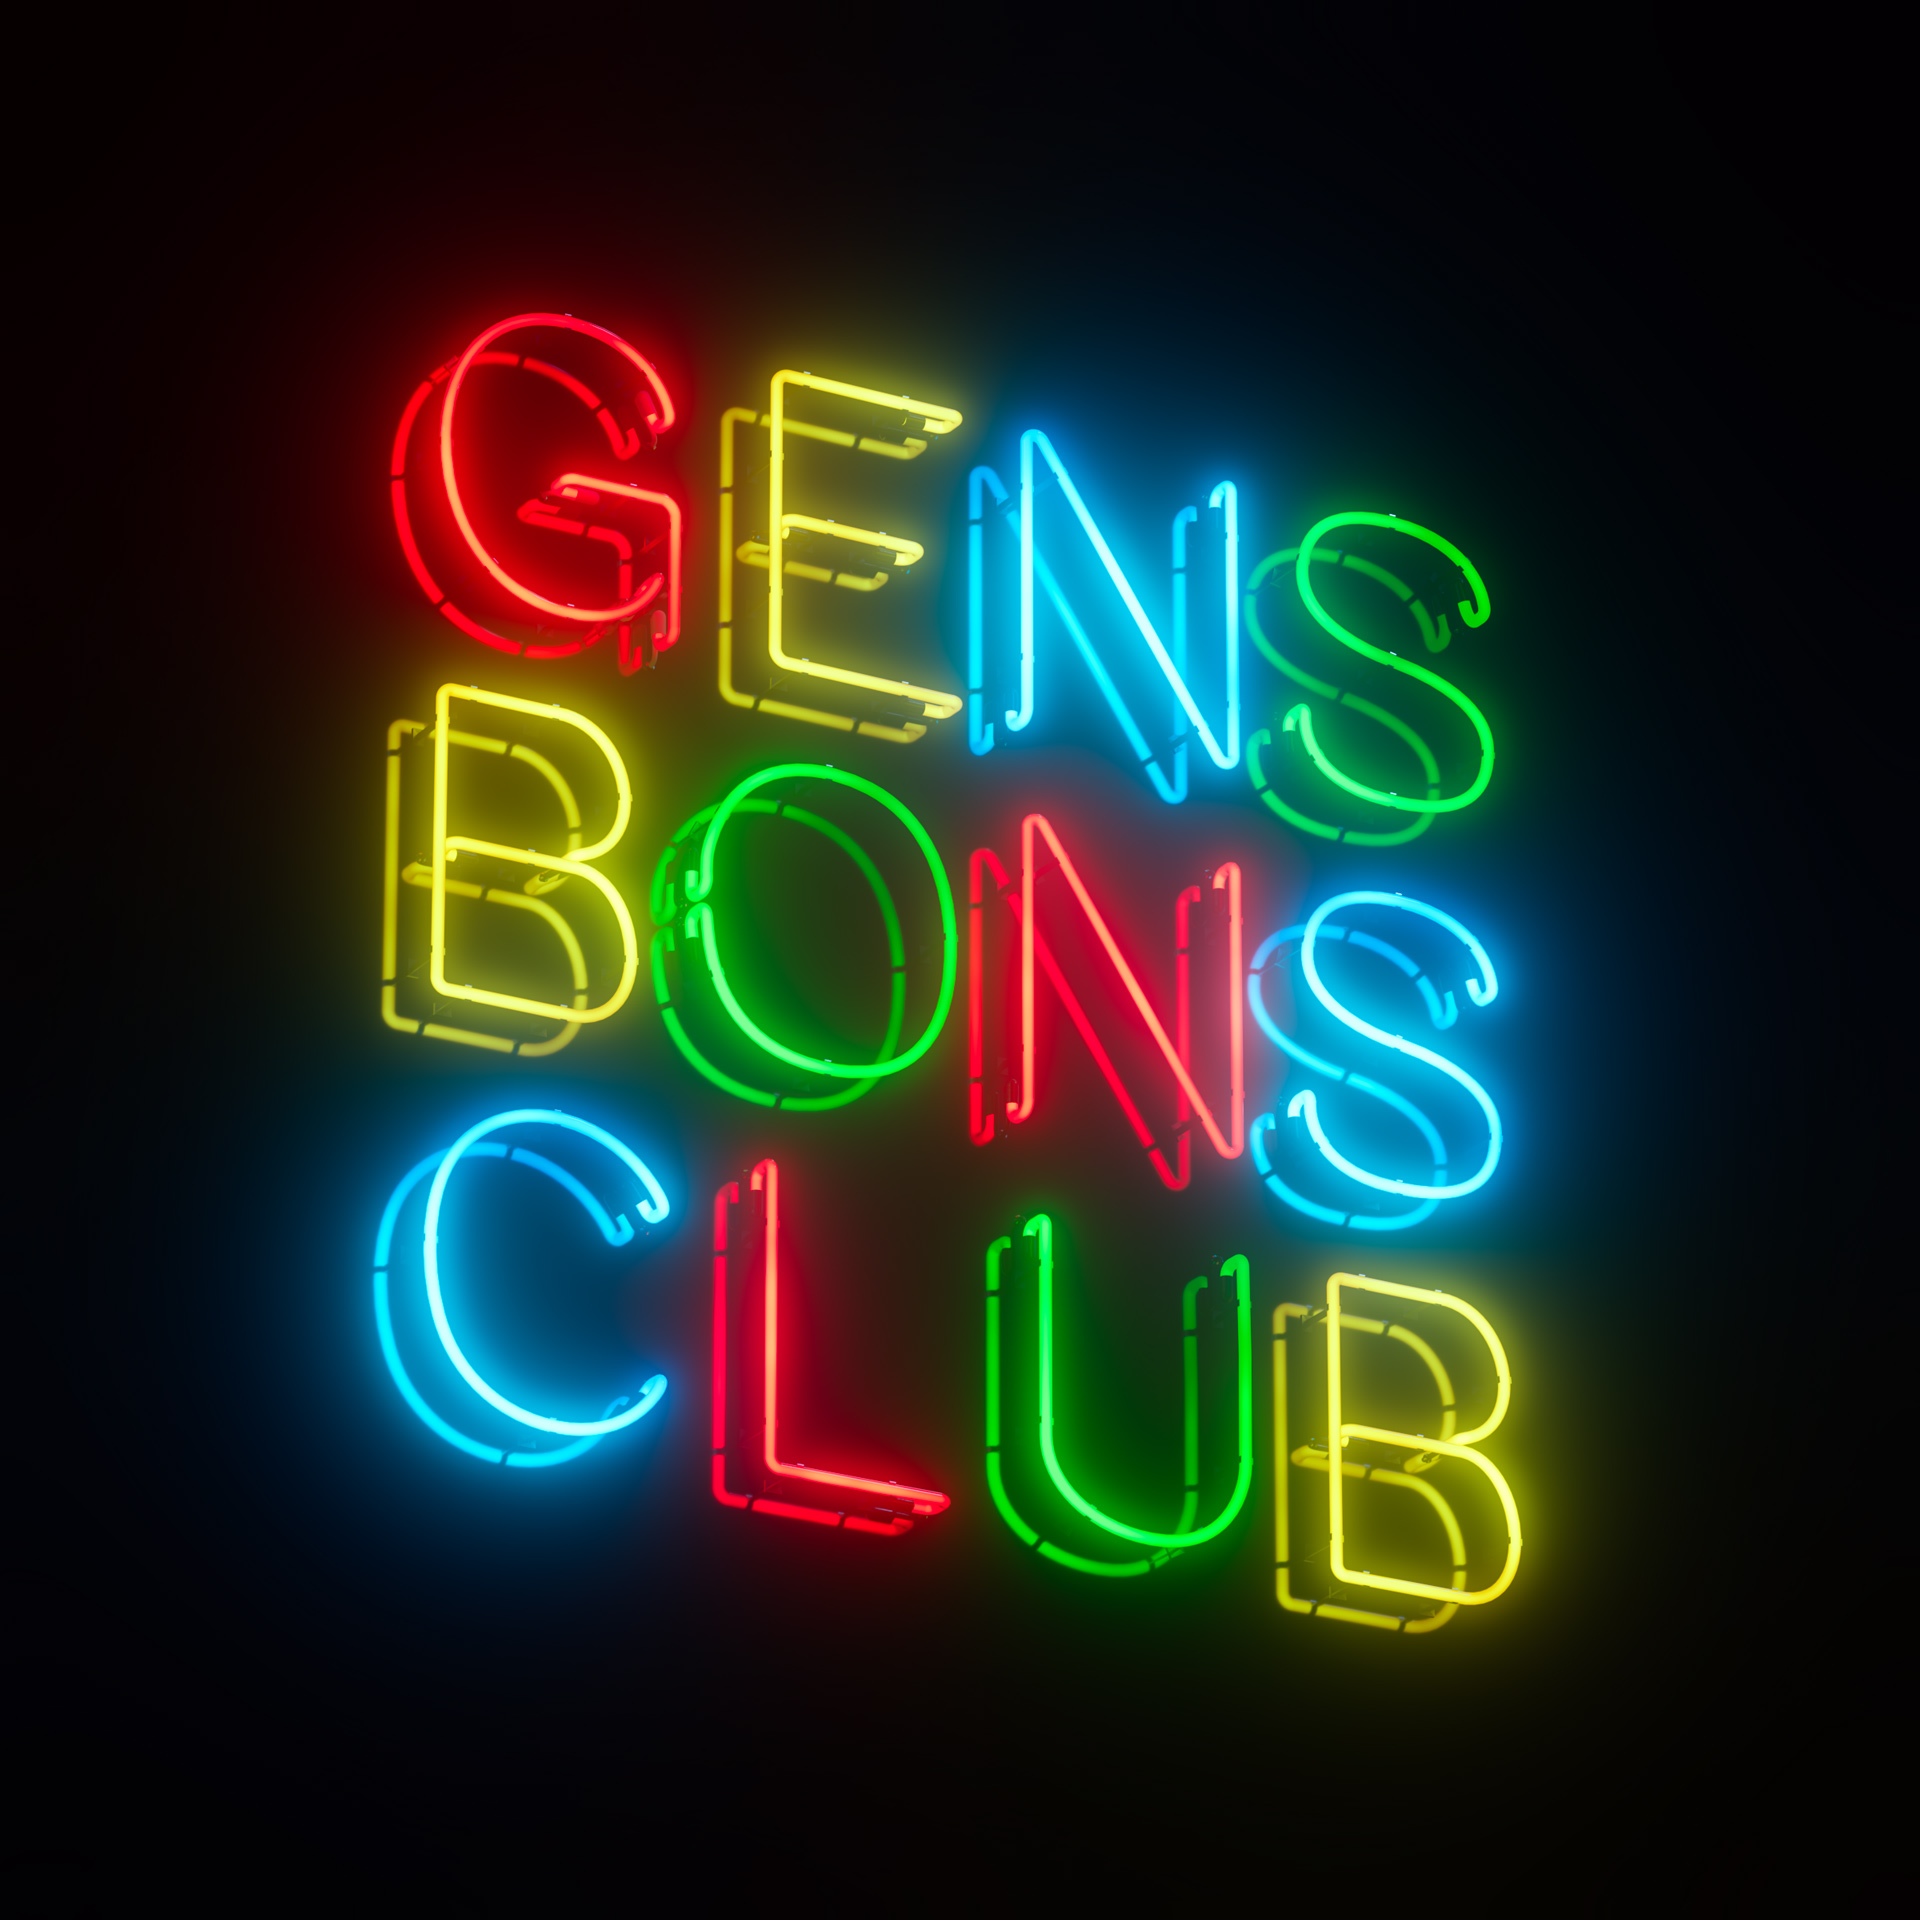 Gens Bons Club by Christophe Vogels in Brussels, Belgium